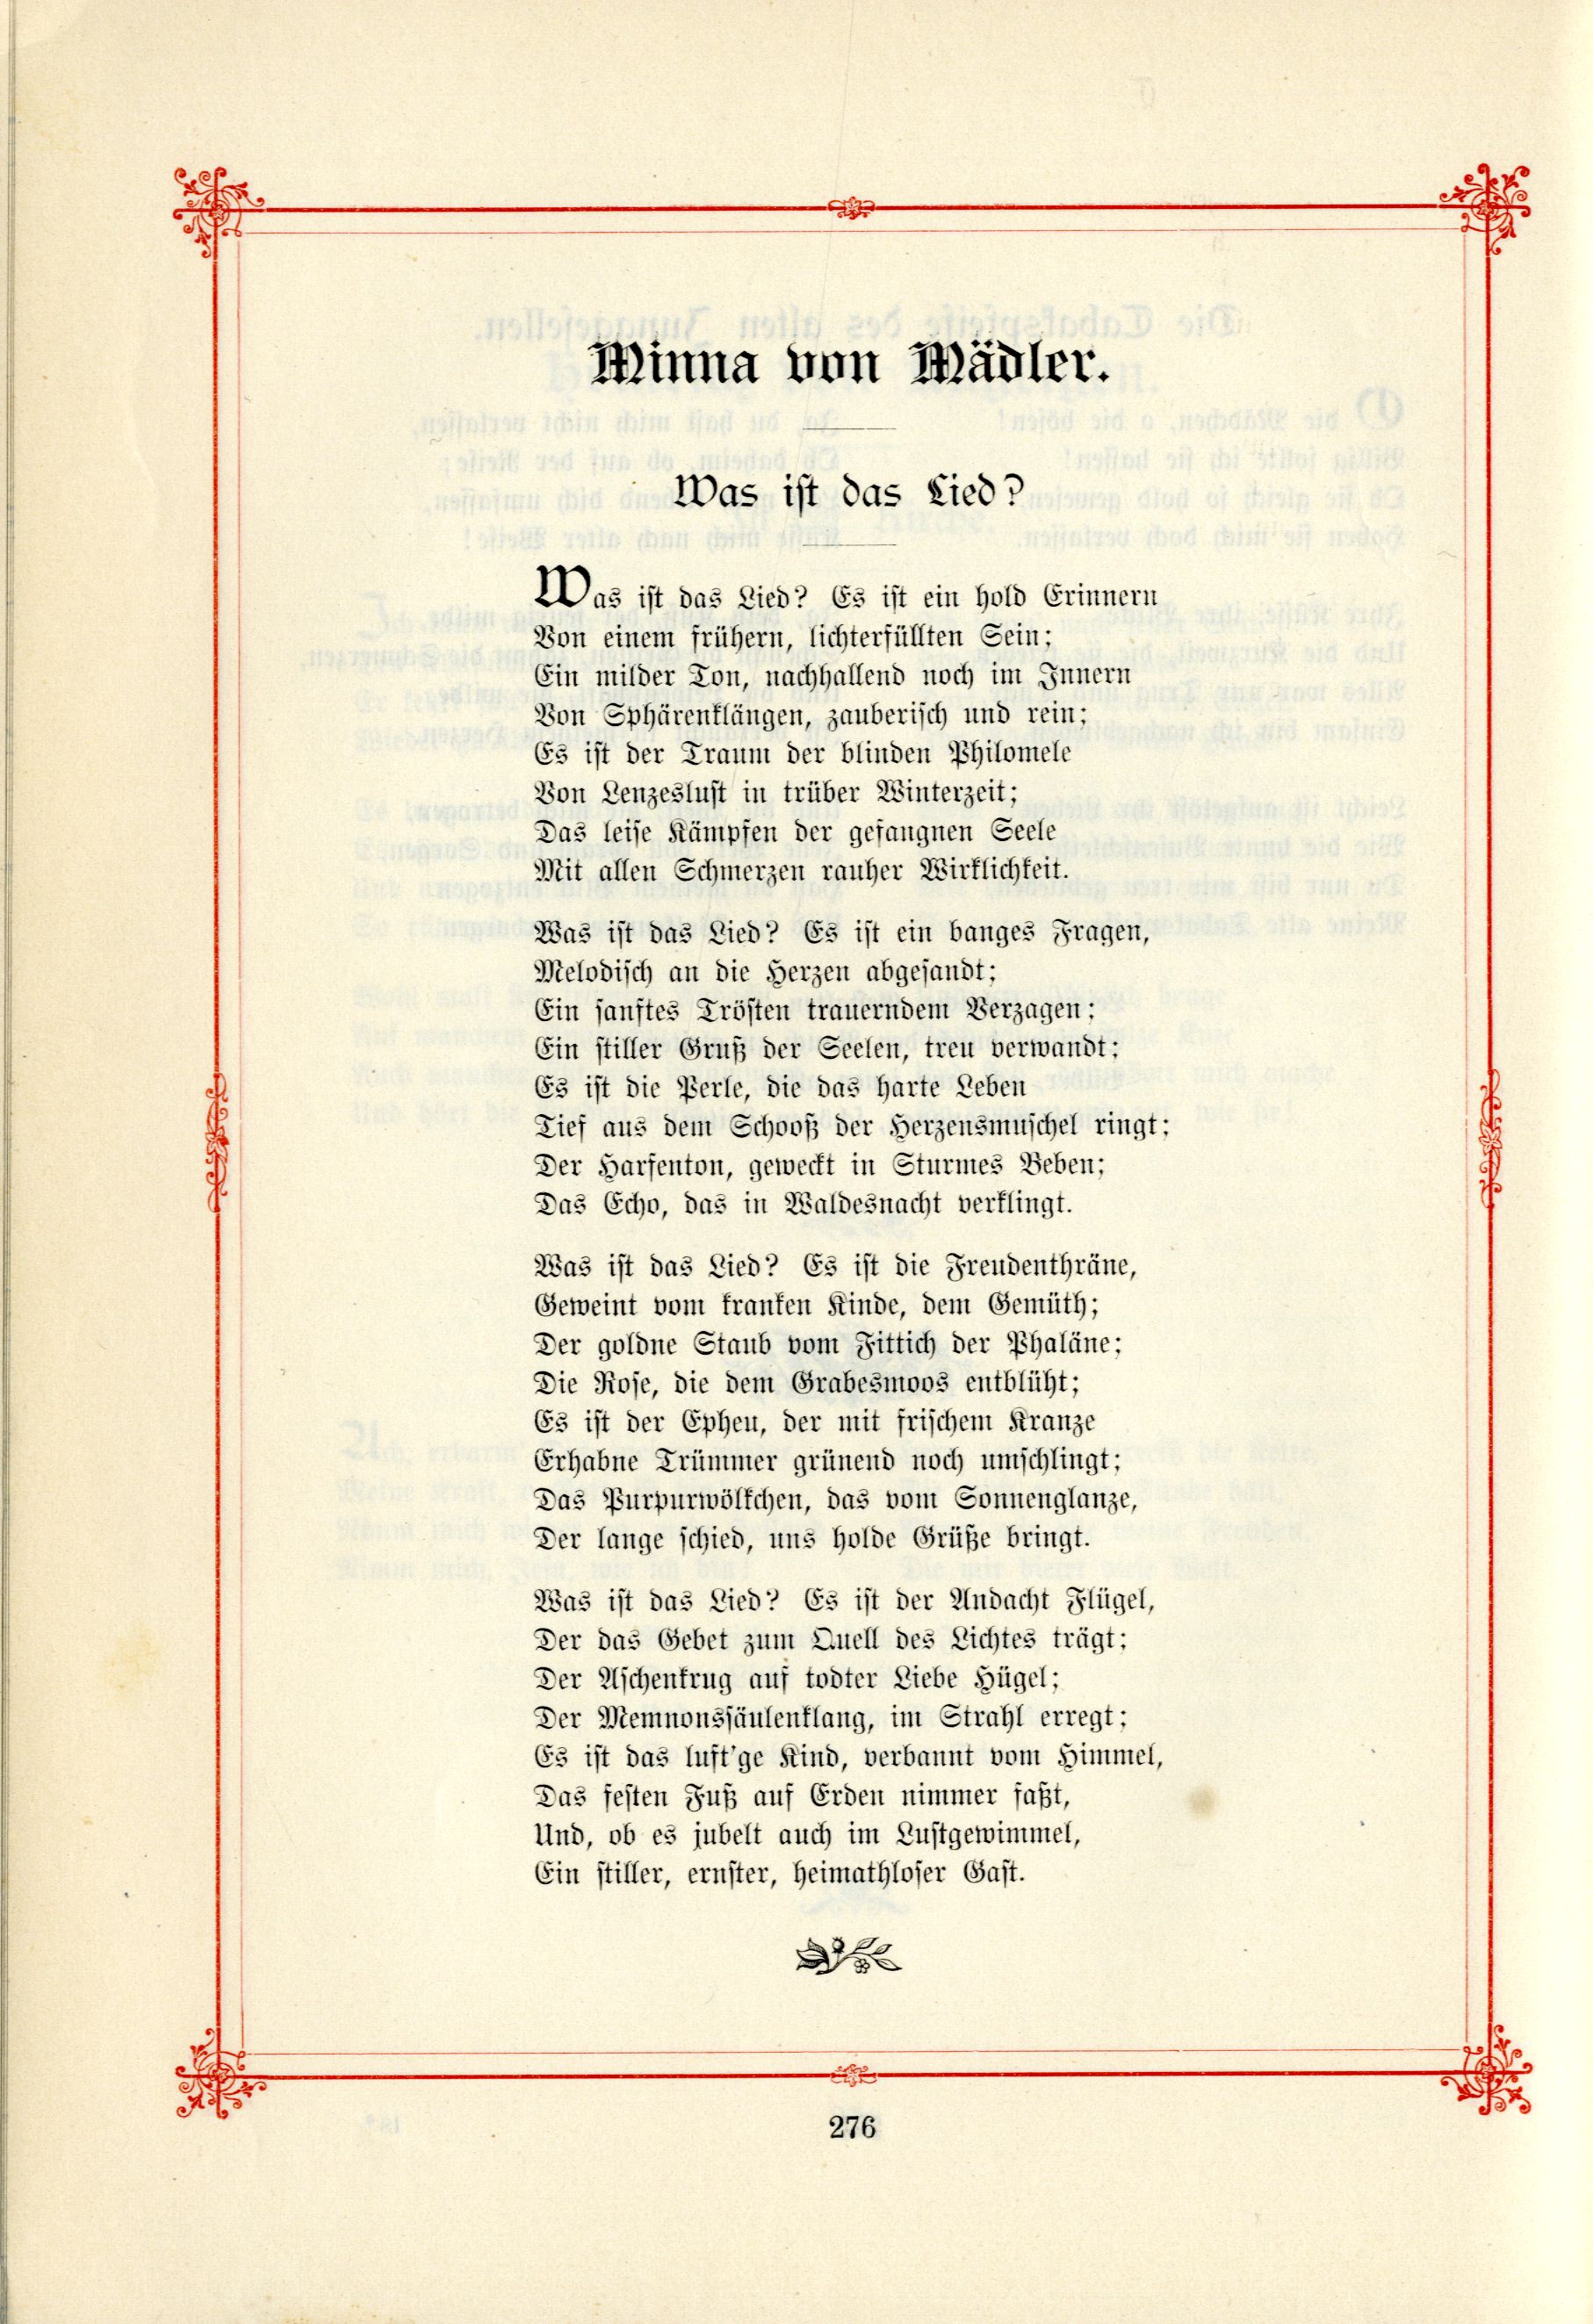 Das Baltische Dichterbuch (1895) | 322. (276) Main body of text